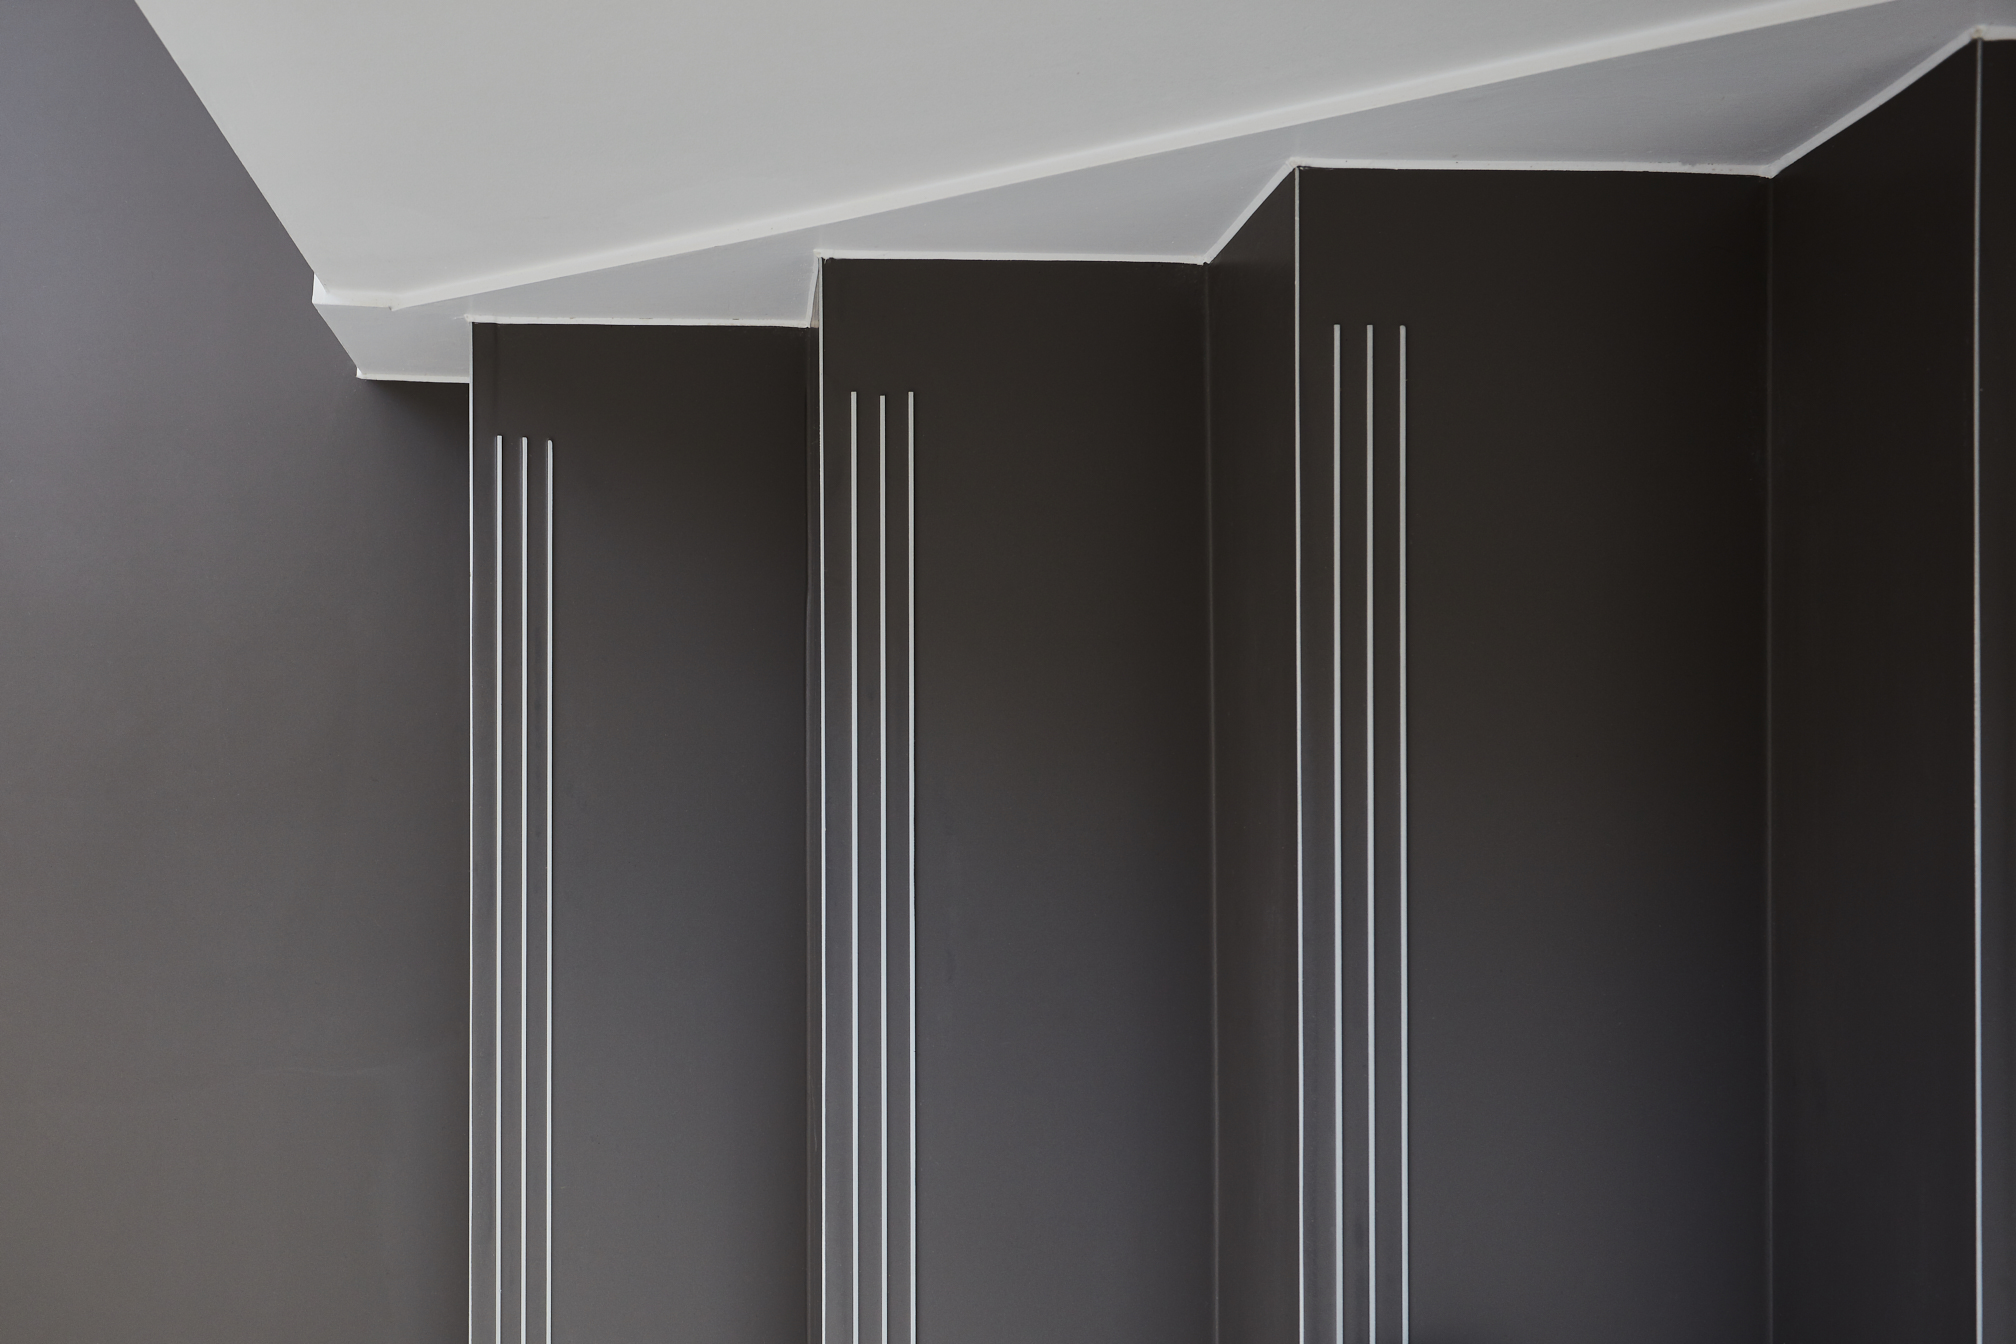 A ForumSphere resin floor in dark grey on stairs